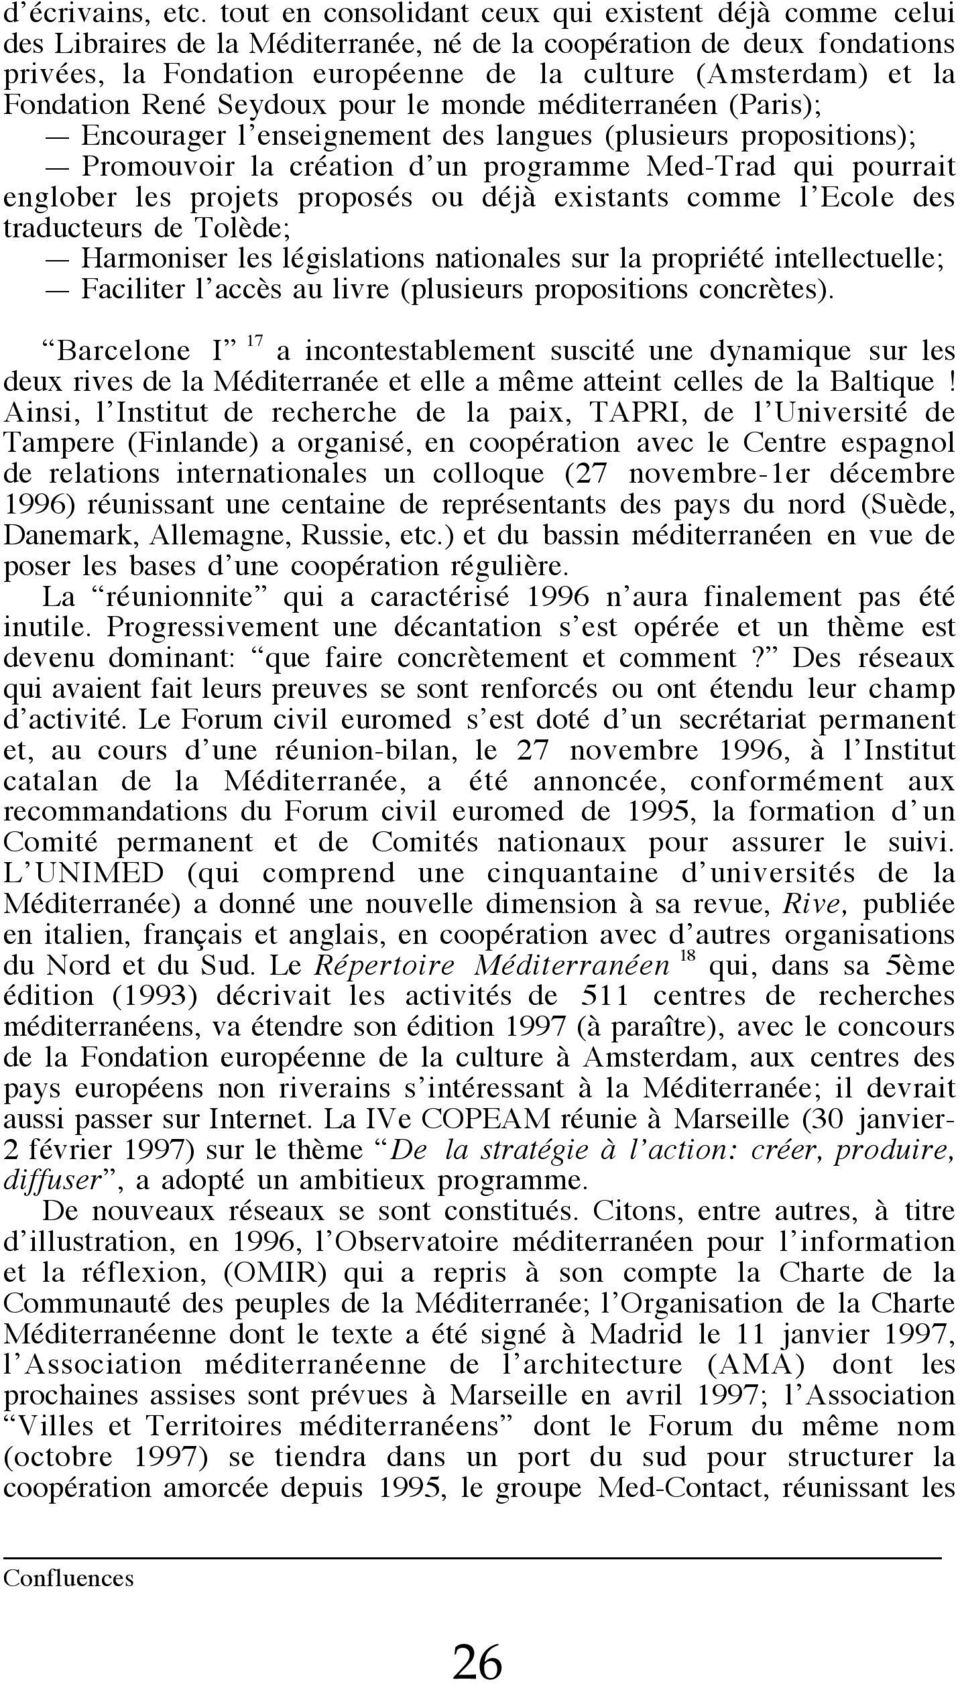 Fondation René Seydoux pour le monde méditerranéen (Paris); Encourager l enseignement des langues (plusieurs propositions); Promouvoir la création d un programme Med-Trad qui pourrait englober les